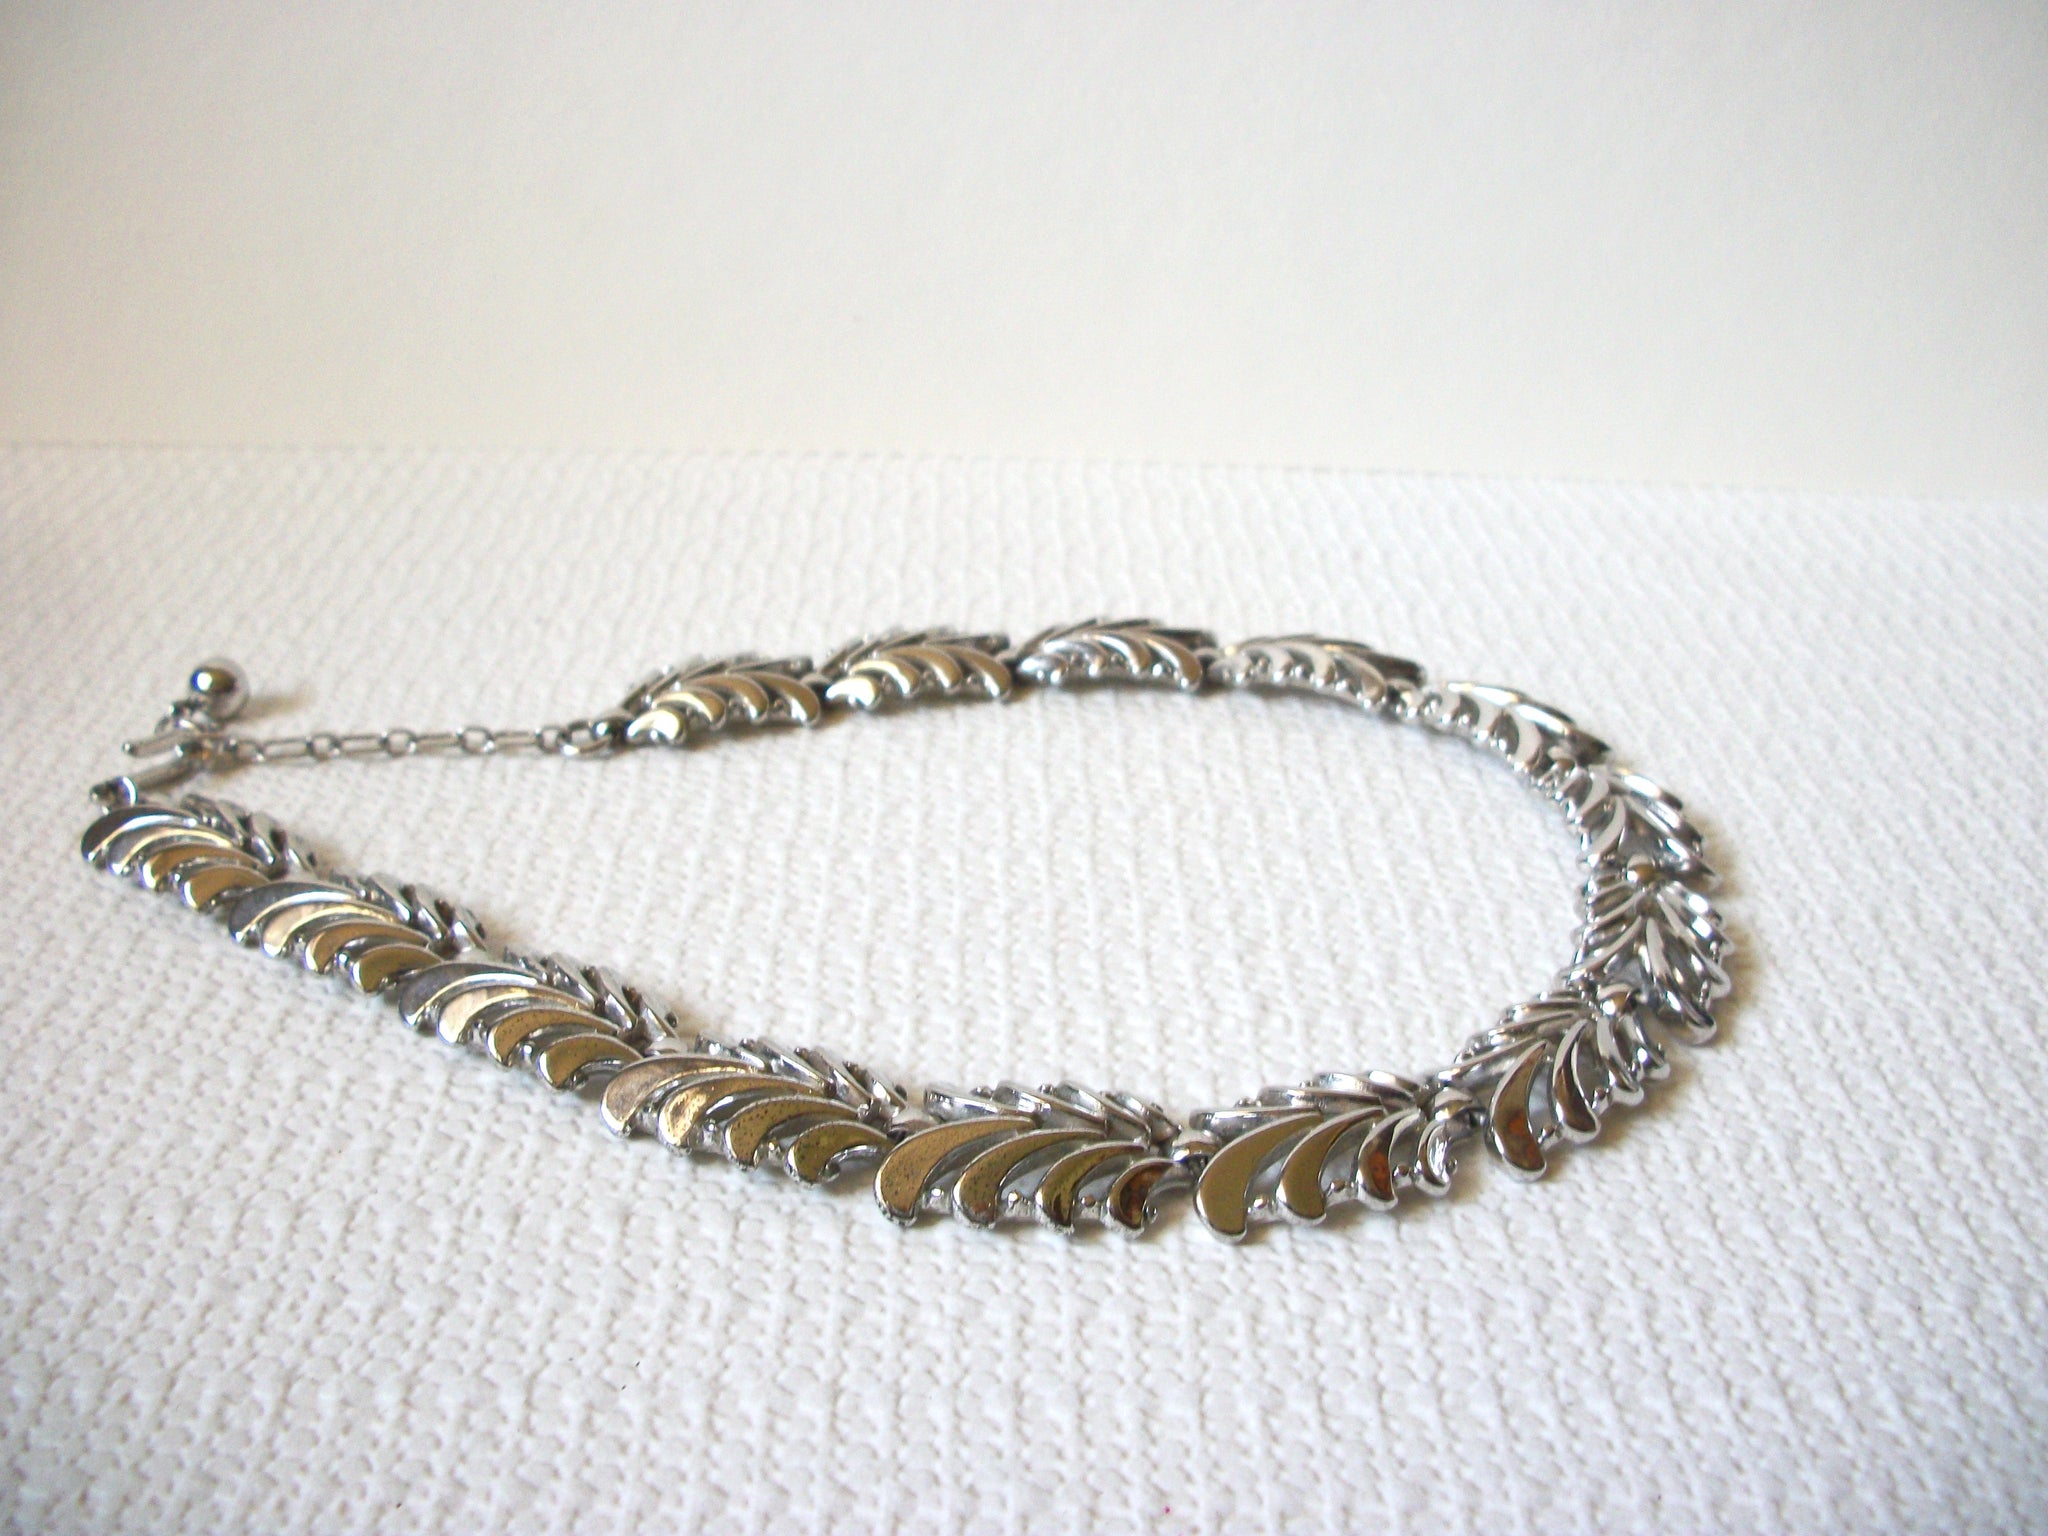 Vintage TRIFARI Art Deco Silver Necklace 92420